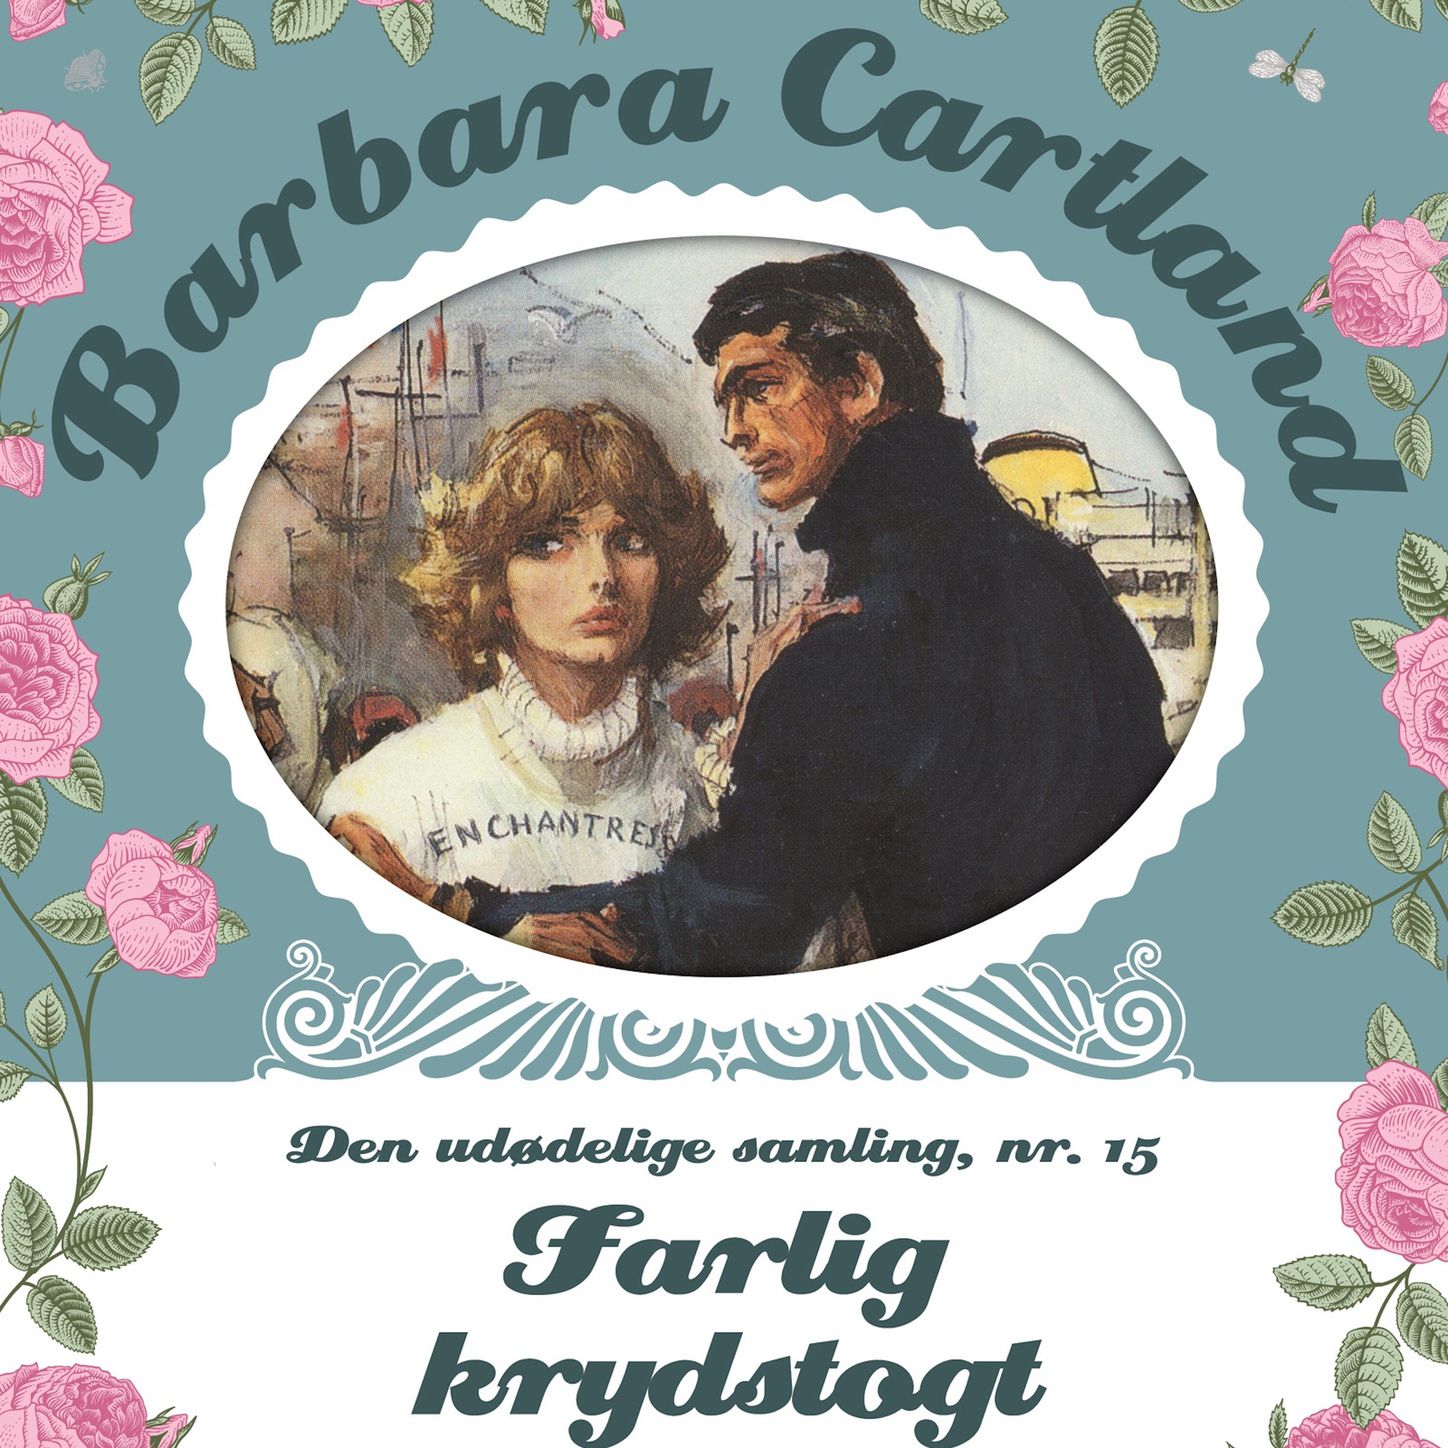 Farlig krydstogt  Barbara Cartland  Den ud delige samling 15, del046